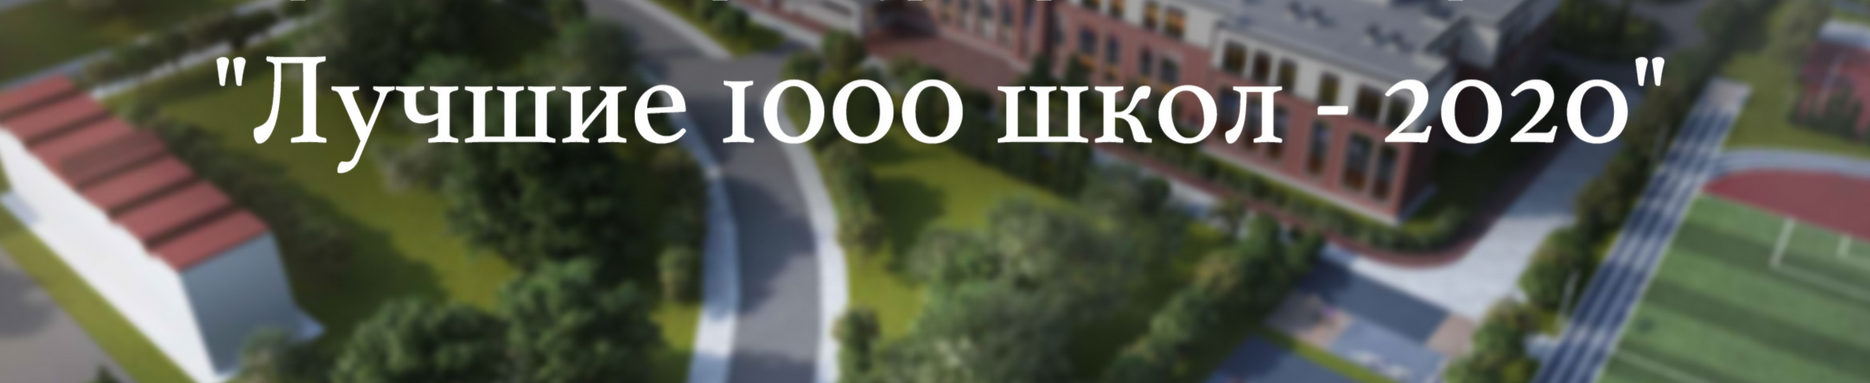 Подведены итоги Всероссийского  конкурса «Лучшие 1000 школ – 2020»